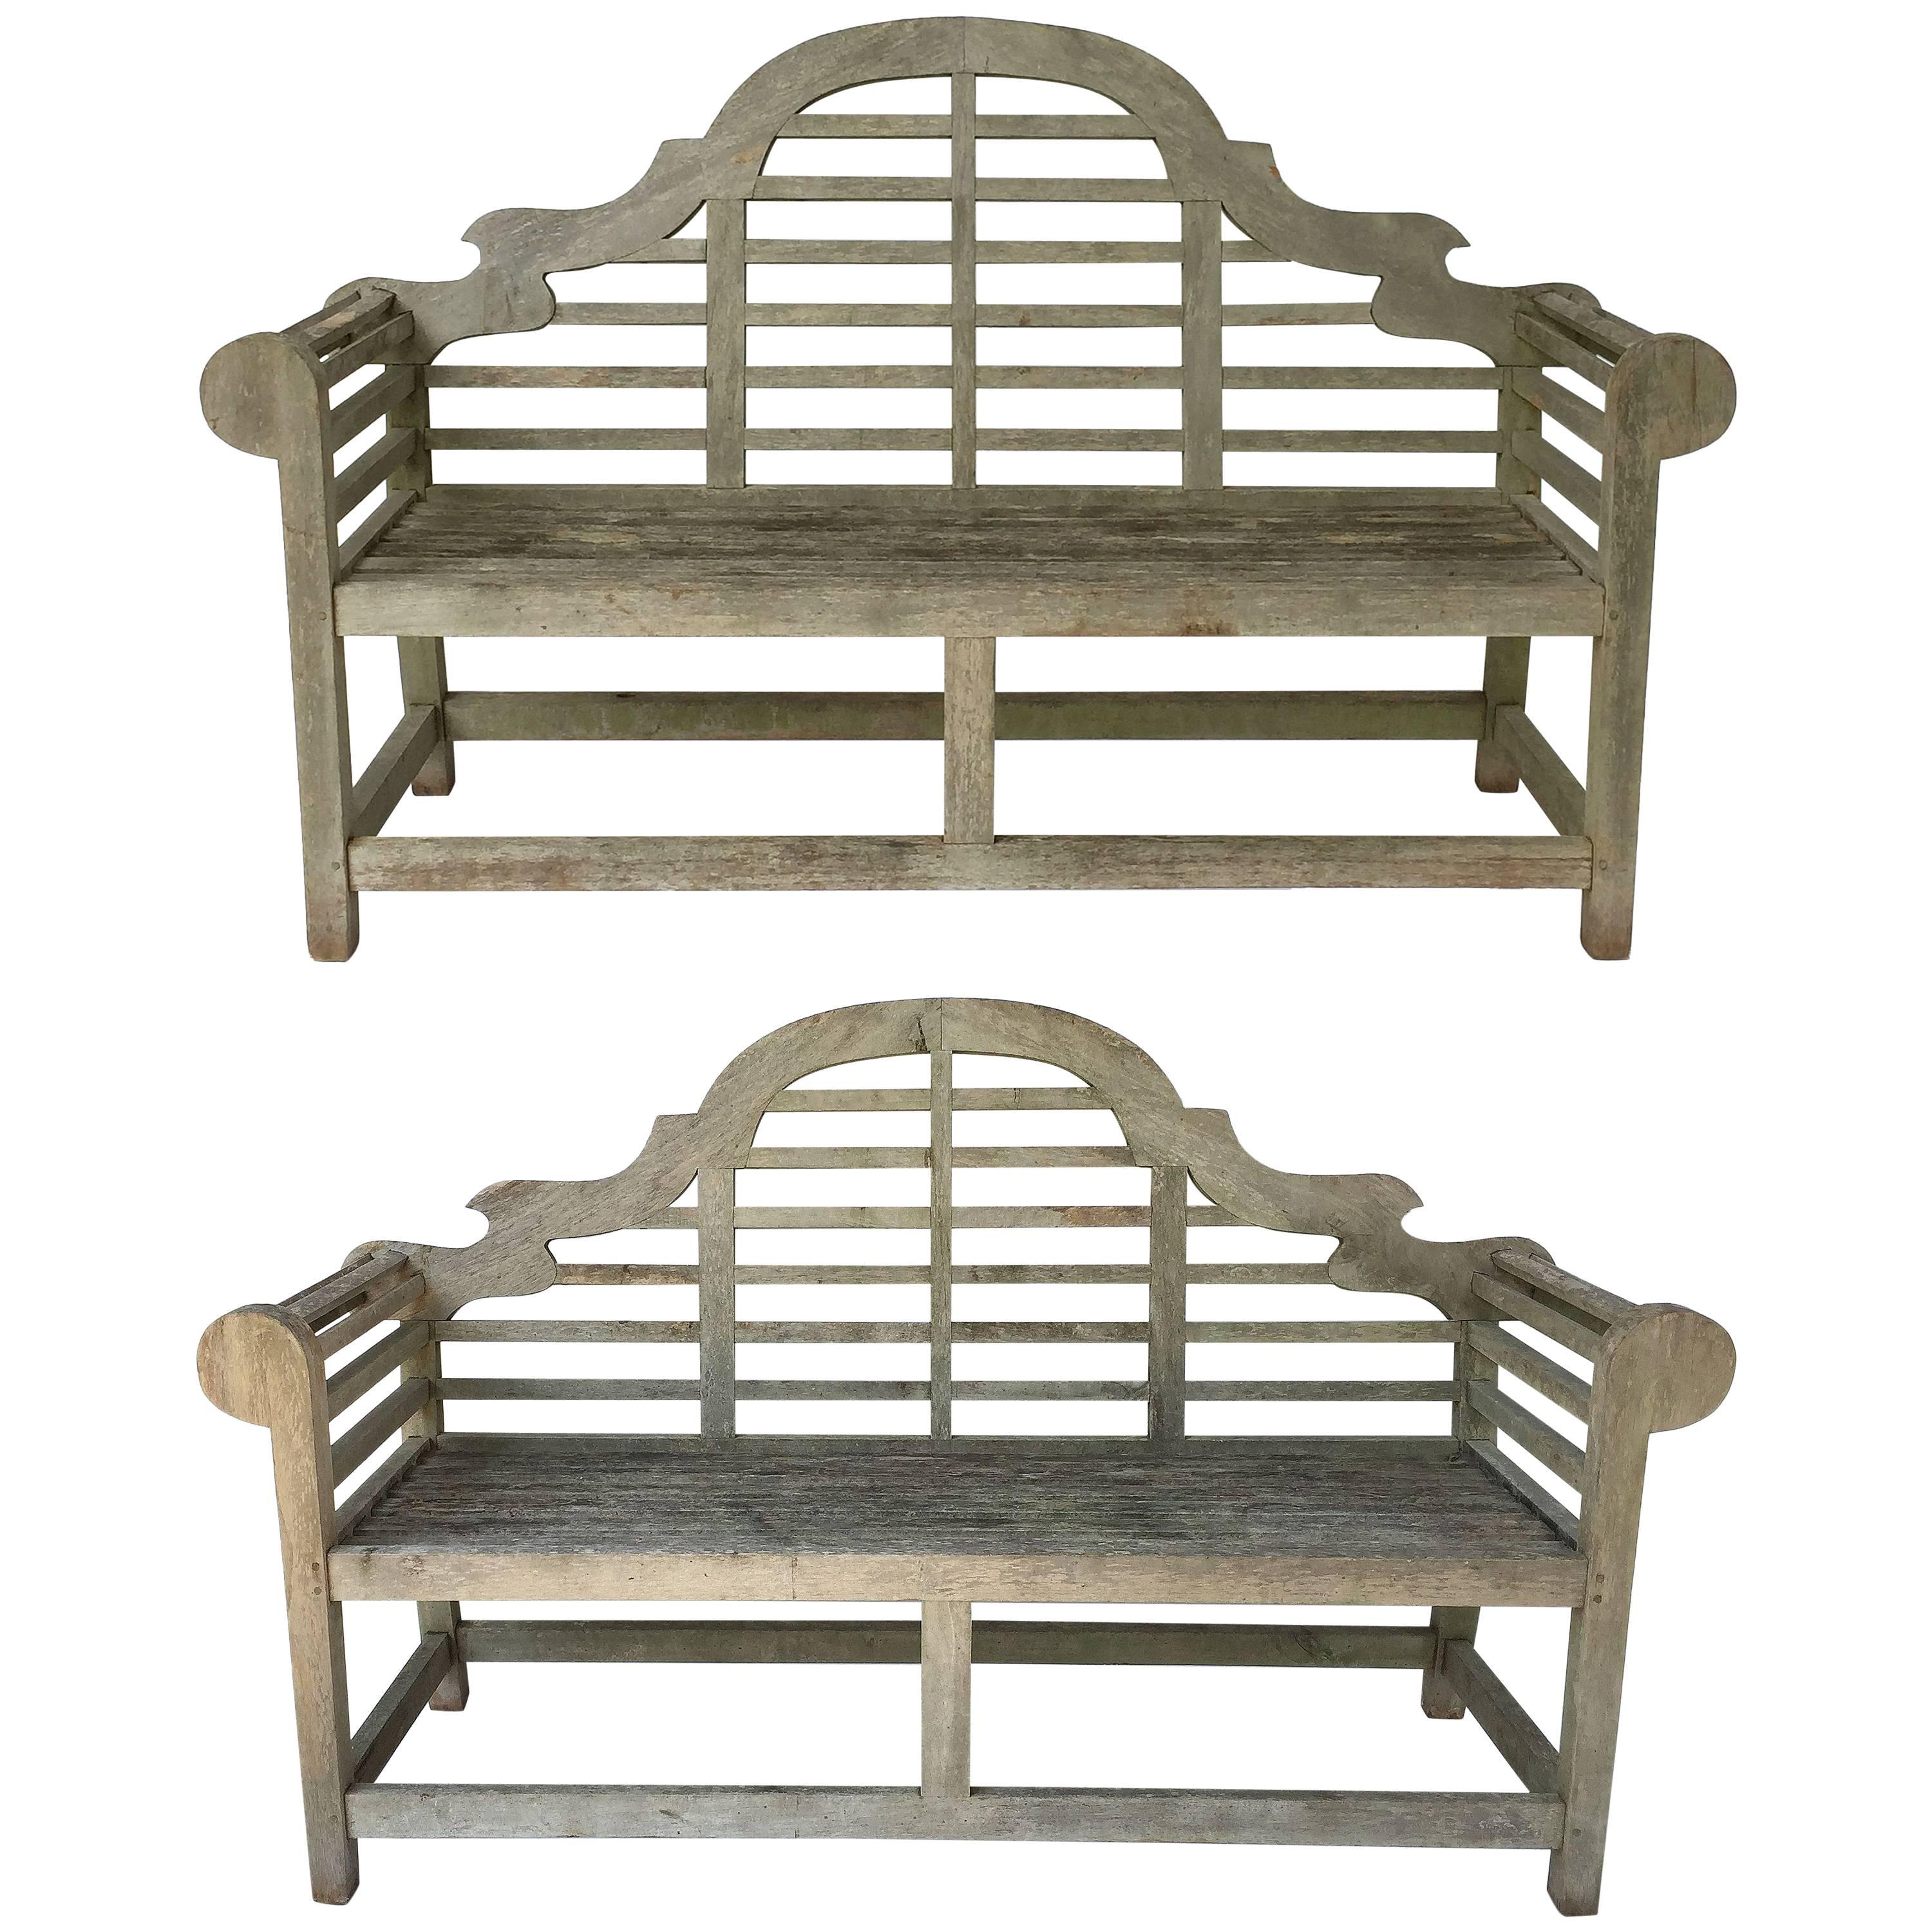 Pair of Lutyens Style Garden Bench Seats of Teak